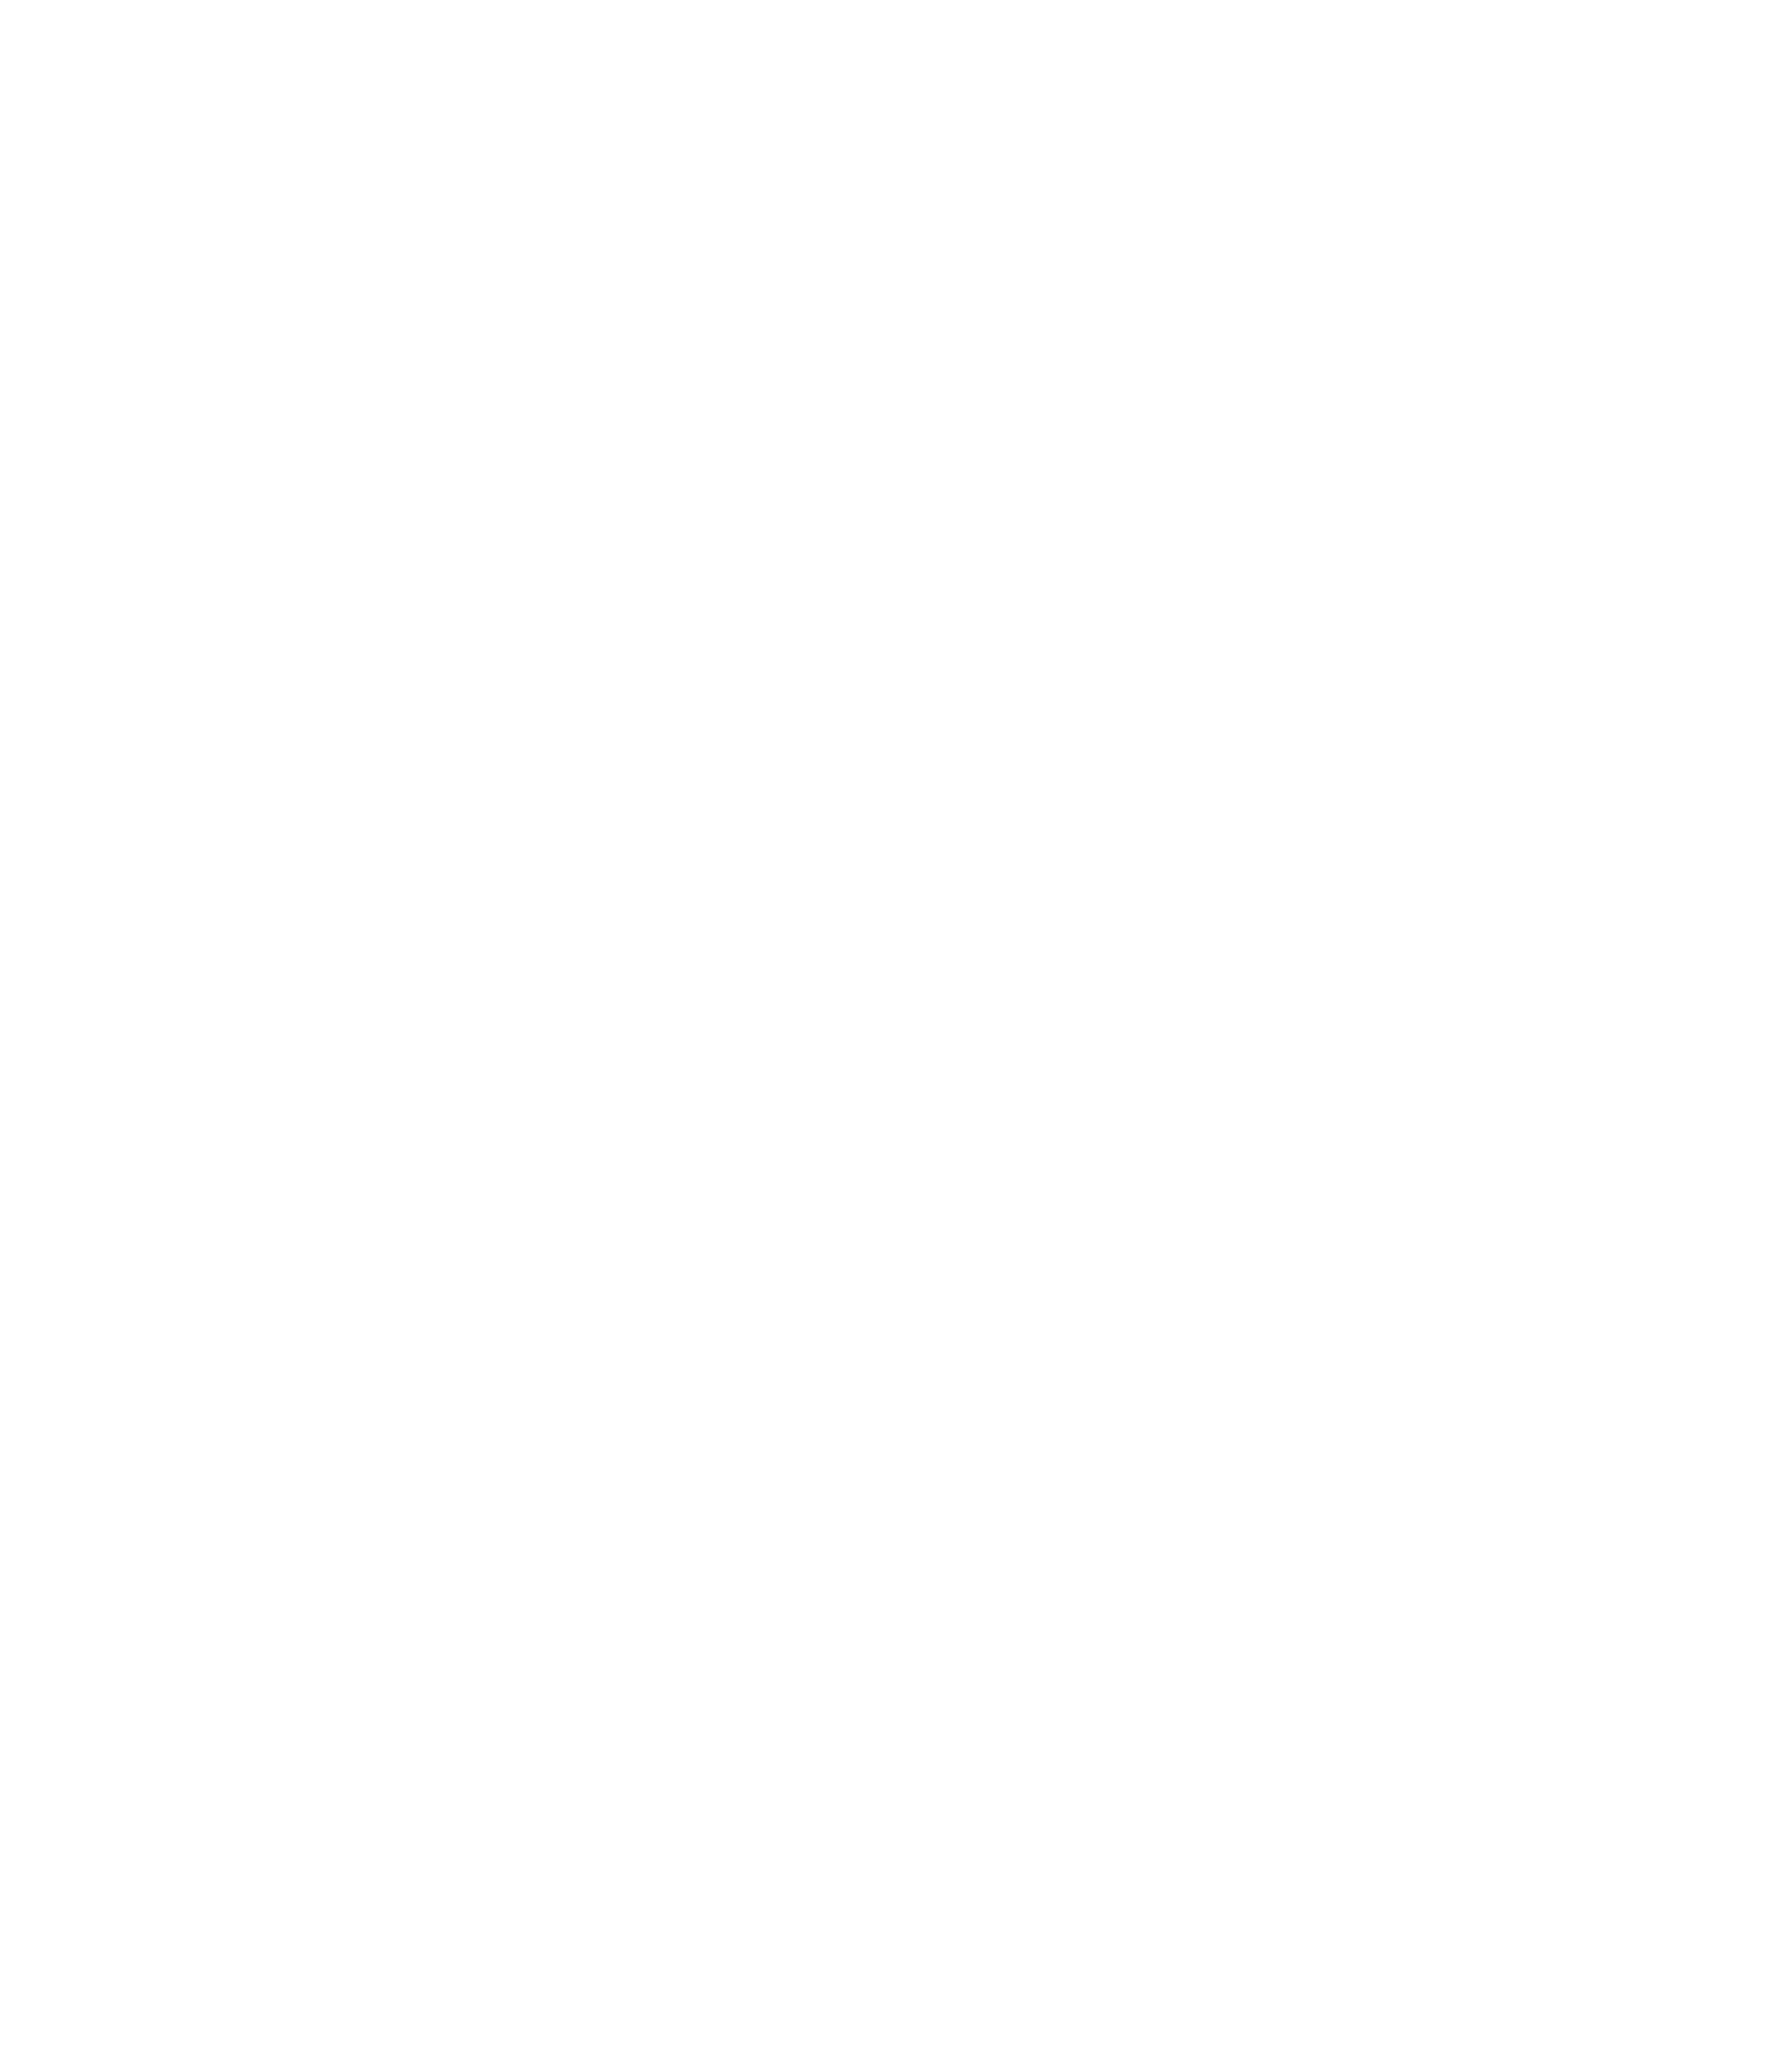 Liquidroast